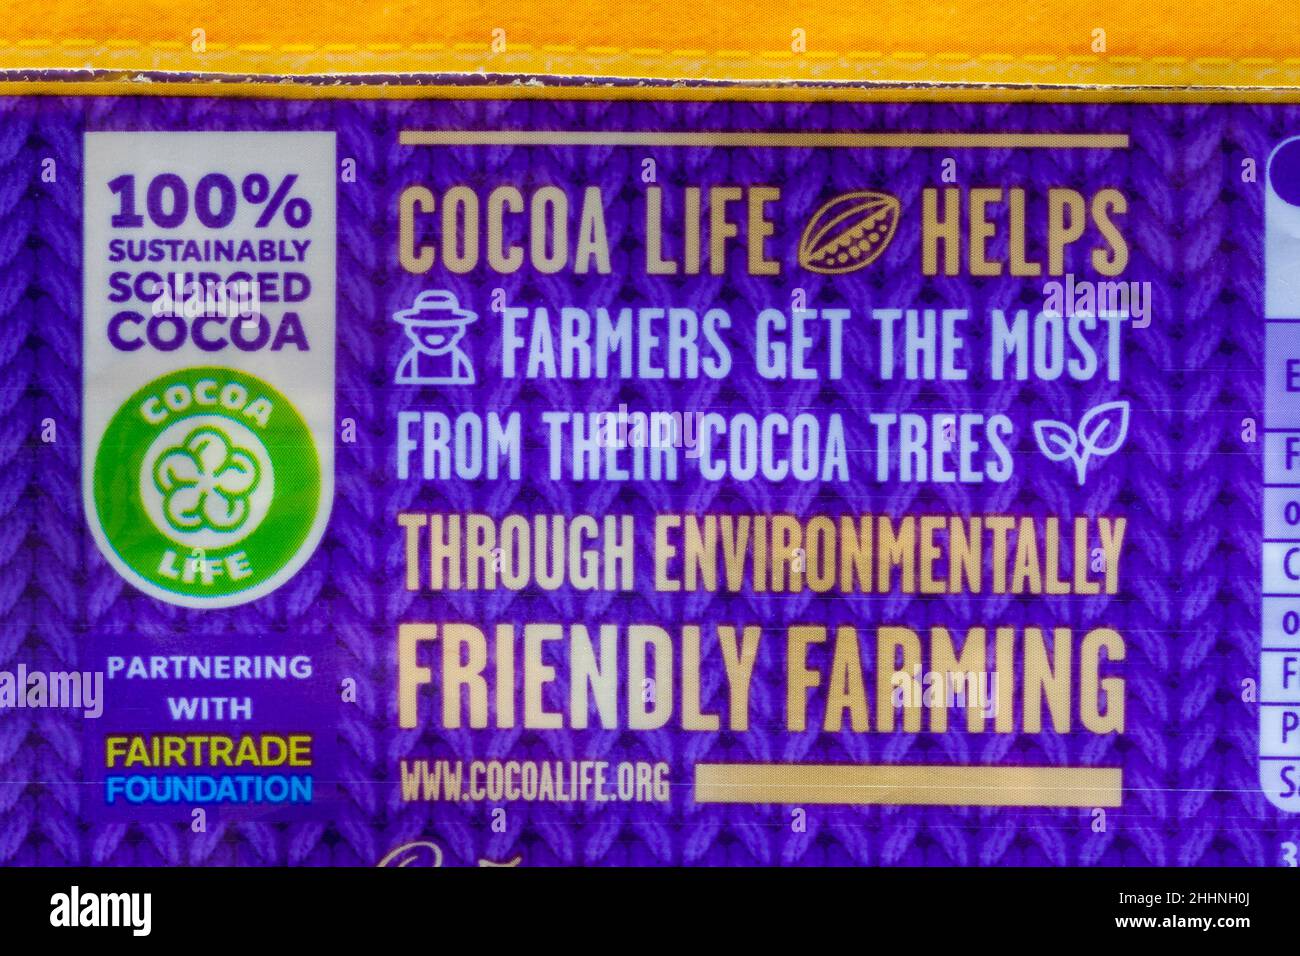 Il 100% fornisce in modo sostenibile informazioni sul cocoalife di cacao su una confezione di cioccolatini Cadebury Dairy Milk Little Robins Daim Foto Stock